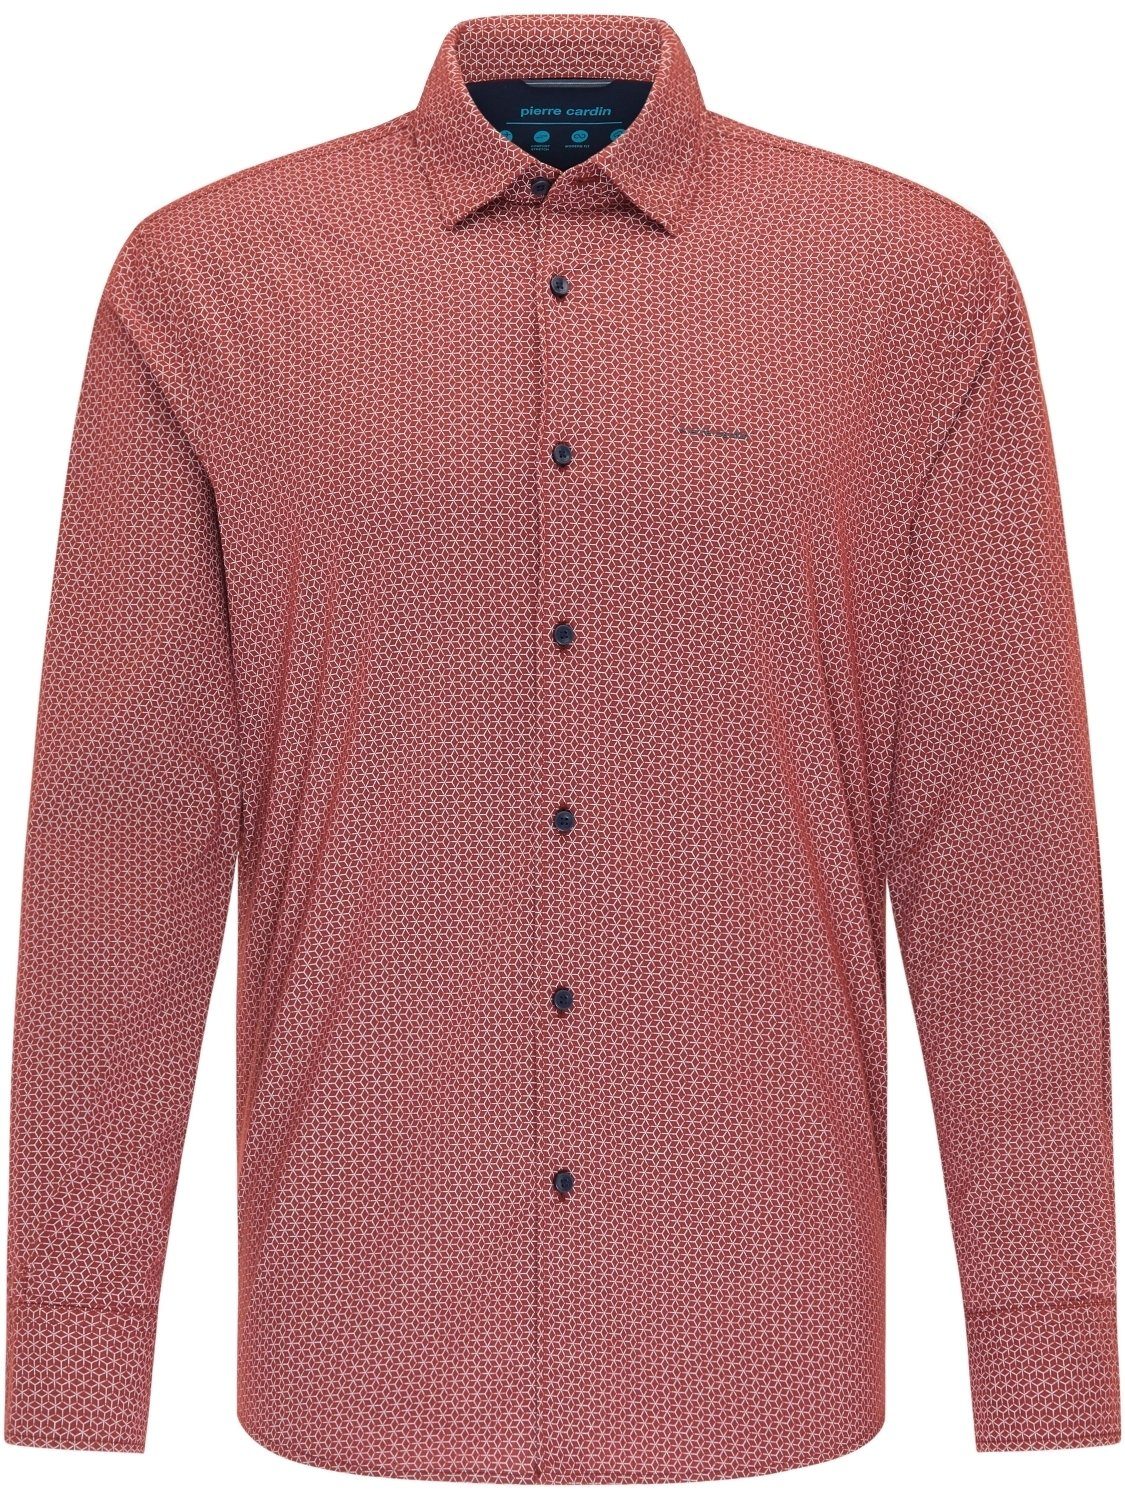 Pierre Cardin Hemden online kaufen | OTTO